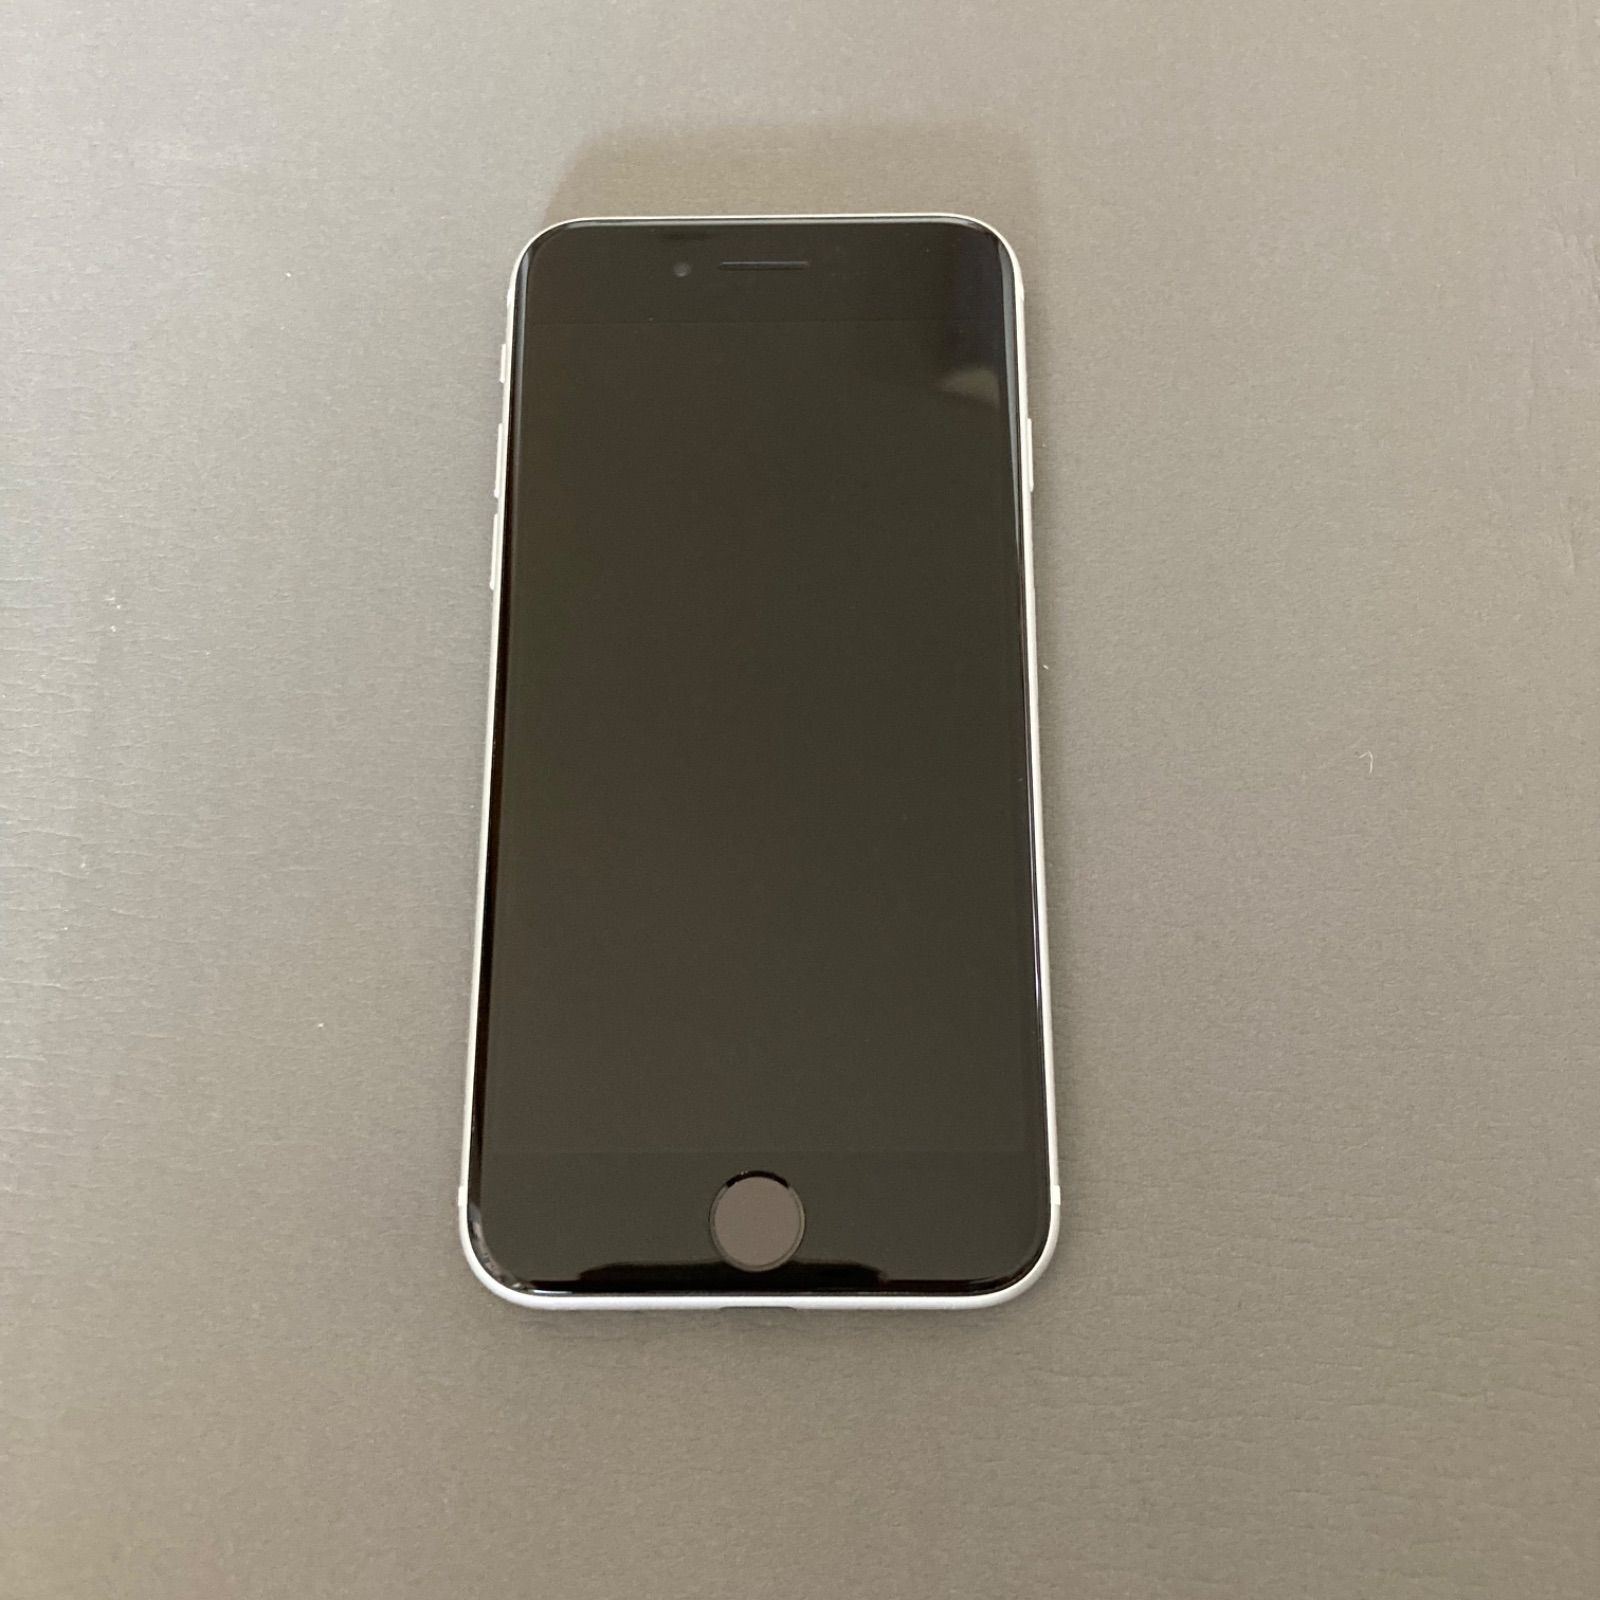 極美品】iPhone SE 第2世代 128GB SIMフリー ホワイト 白 - メルカリ